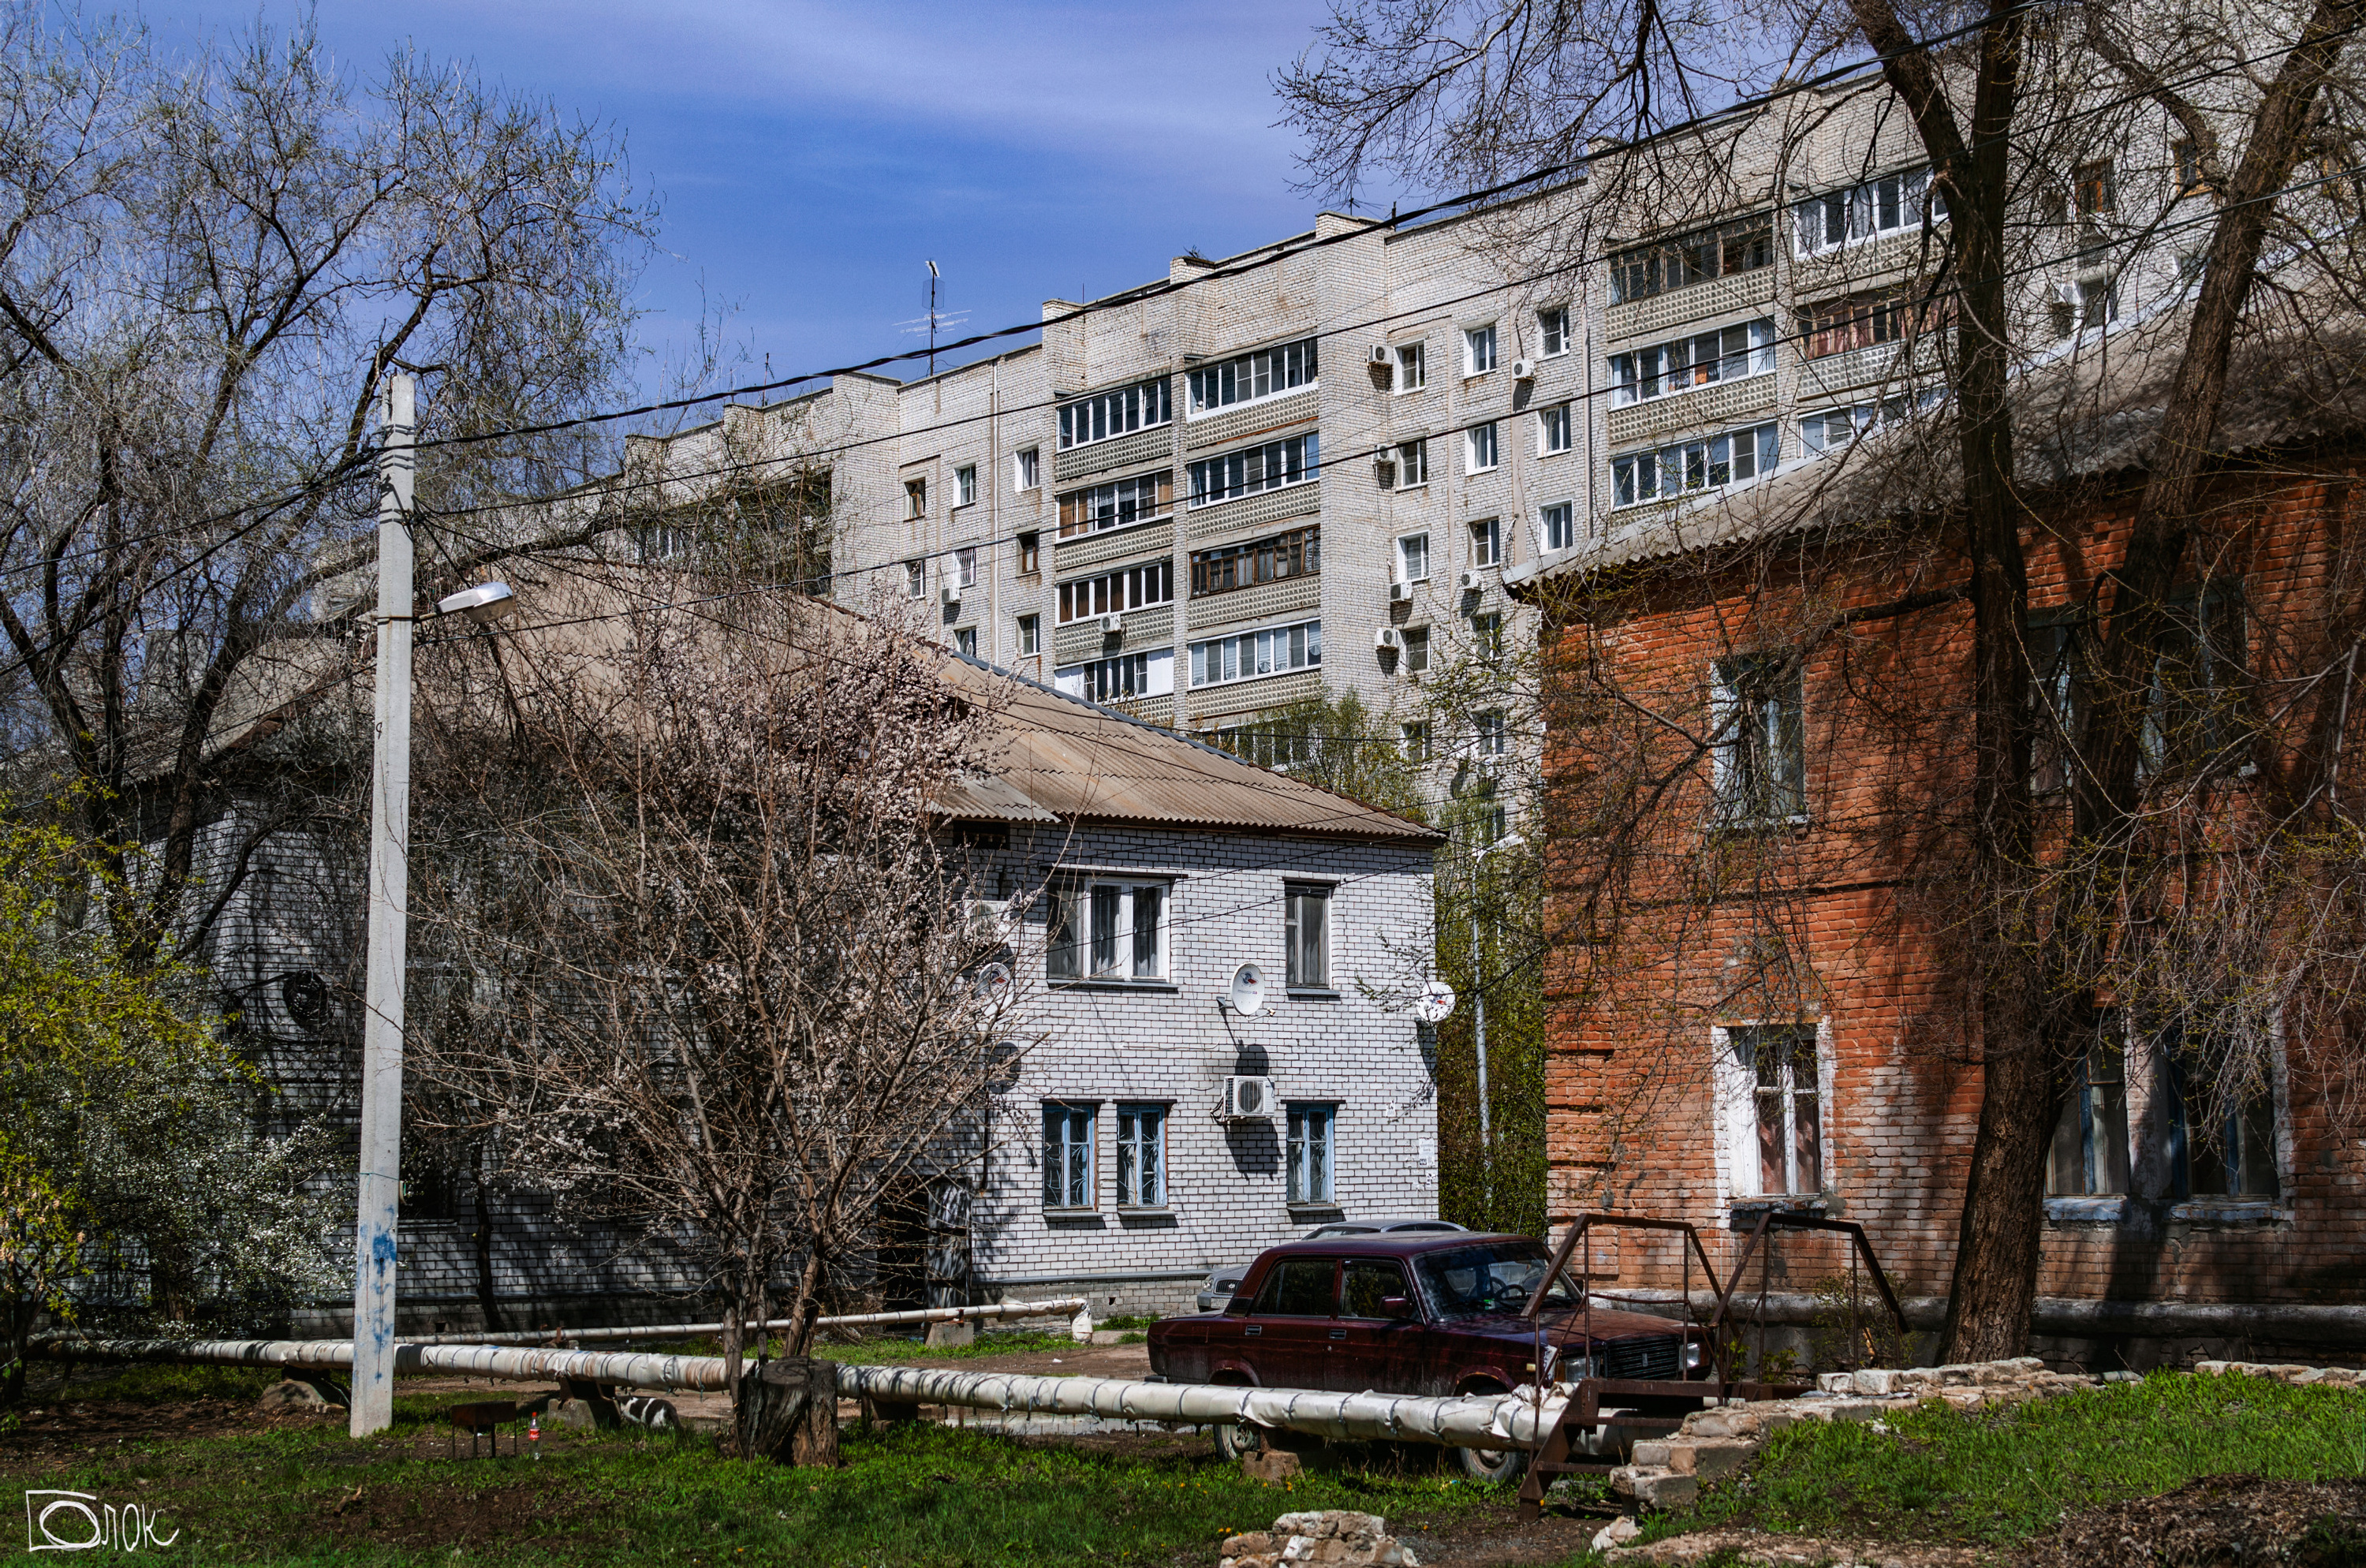 Волгоград — город контрастов, и такое соседство уже никого из горожан не удивляет 